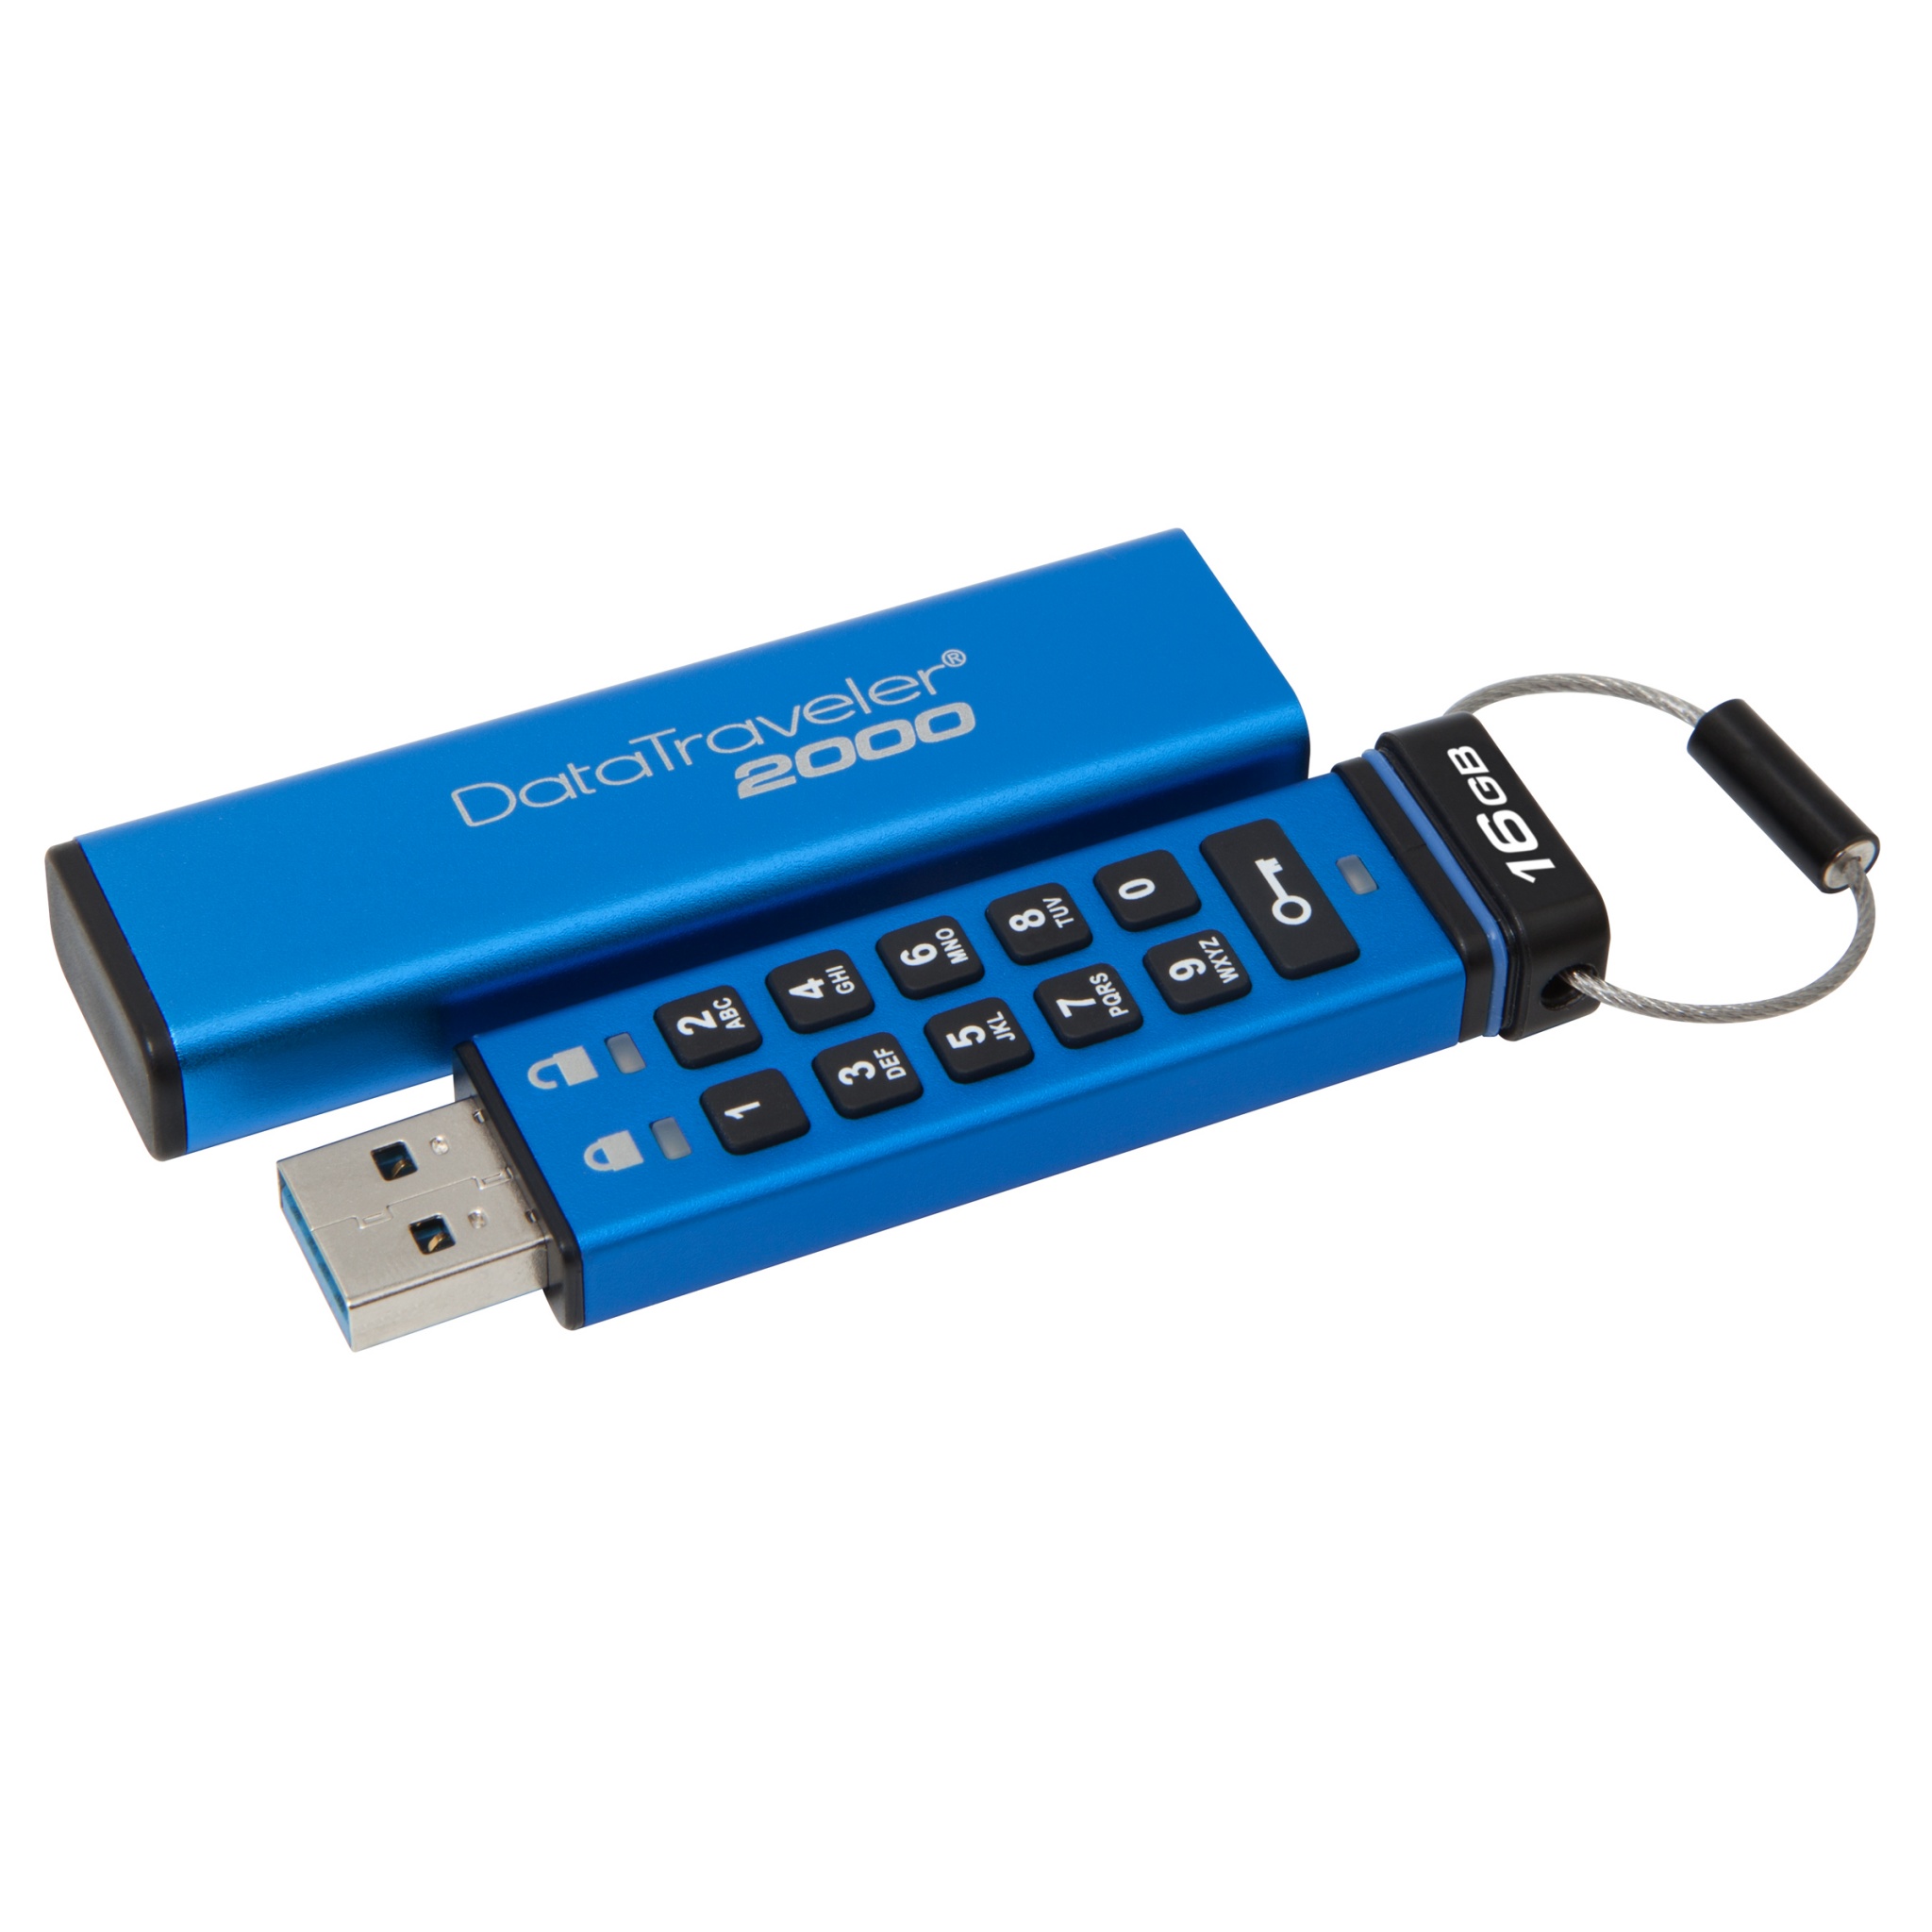 Kingston DataTraveler 2000, un USB encriptado con teclado #CES2016